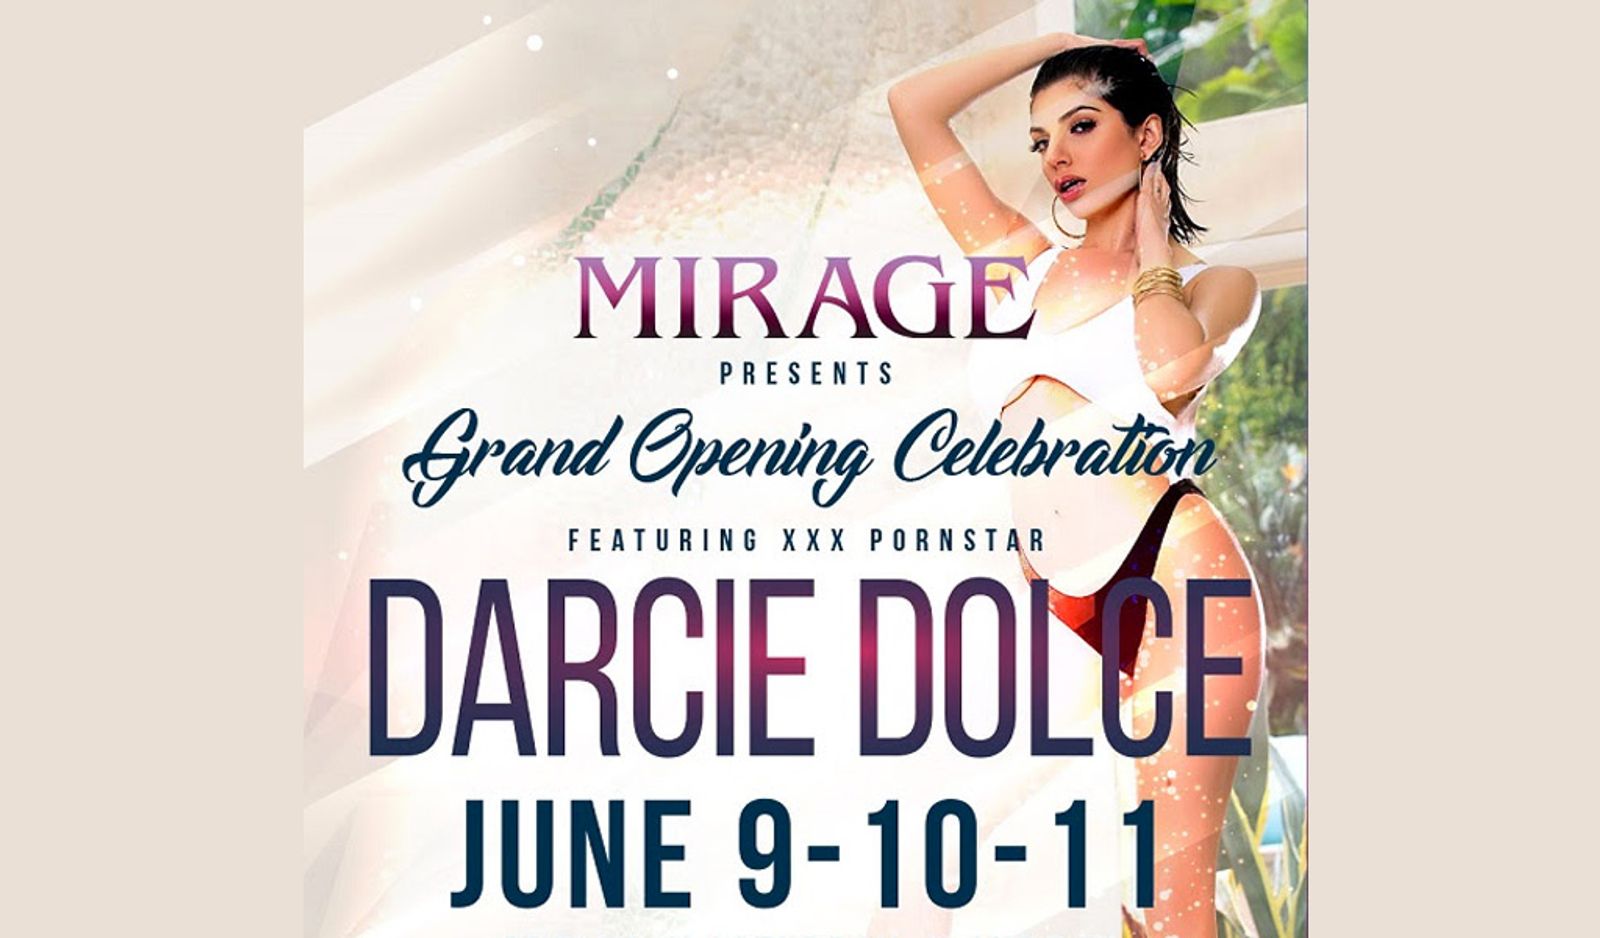 Darcie Dolce Headlines at Mirage Gentlemen’s Club